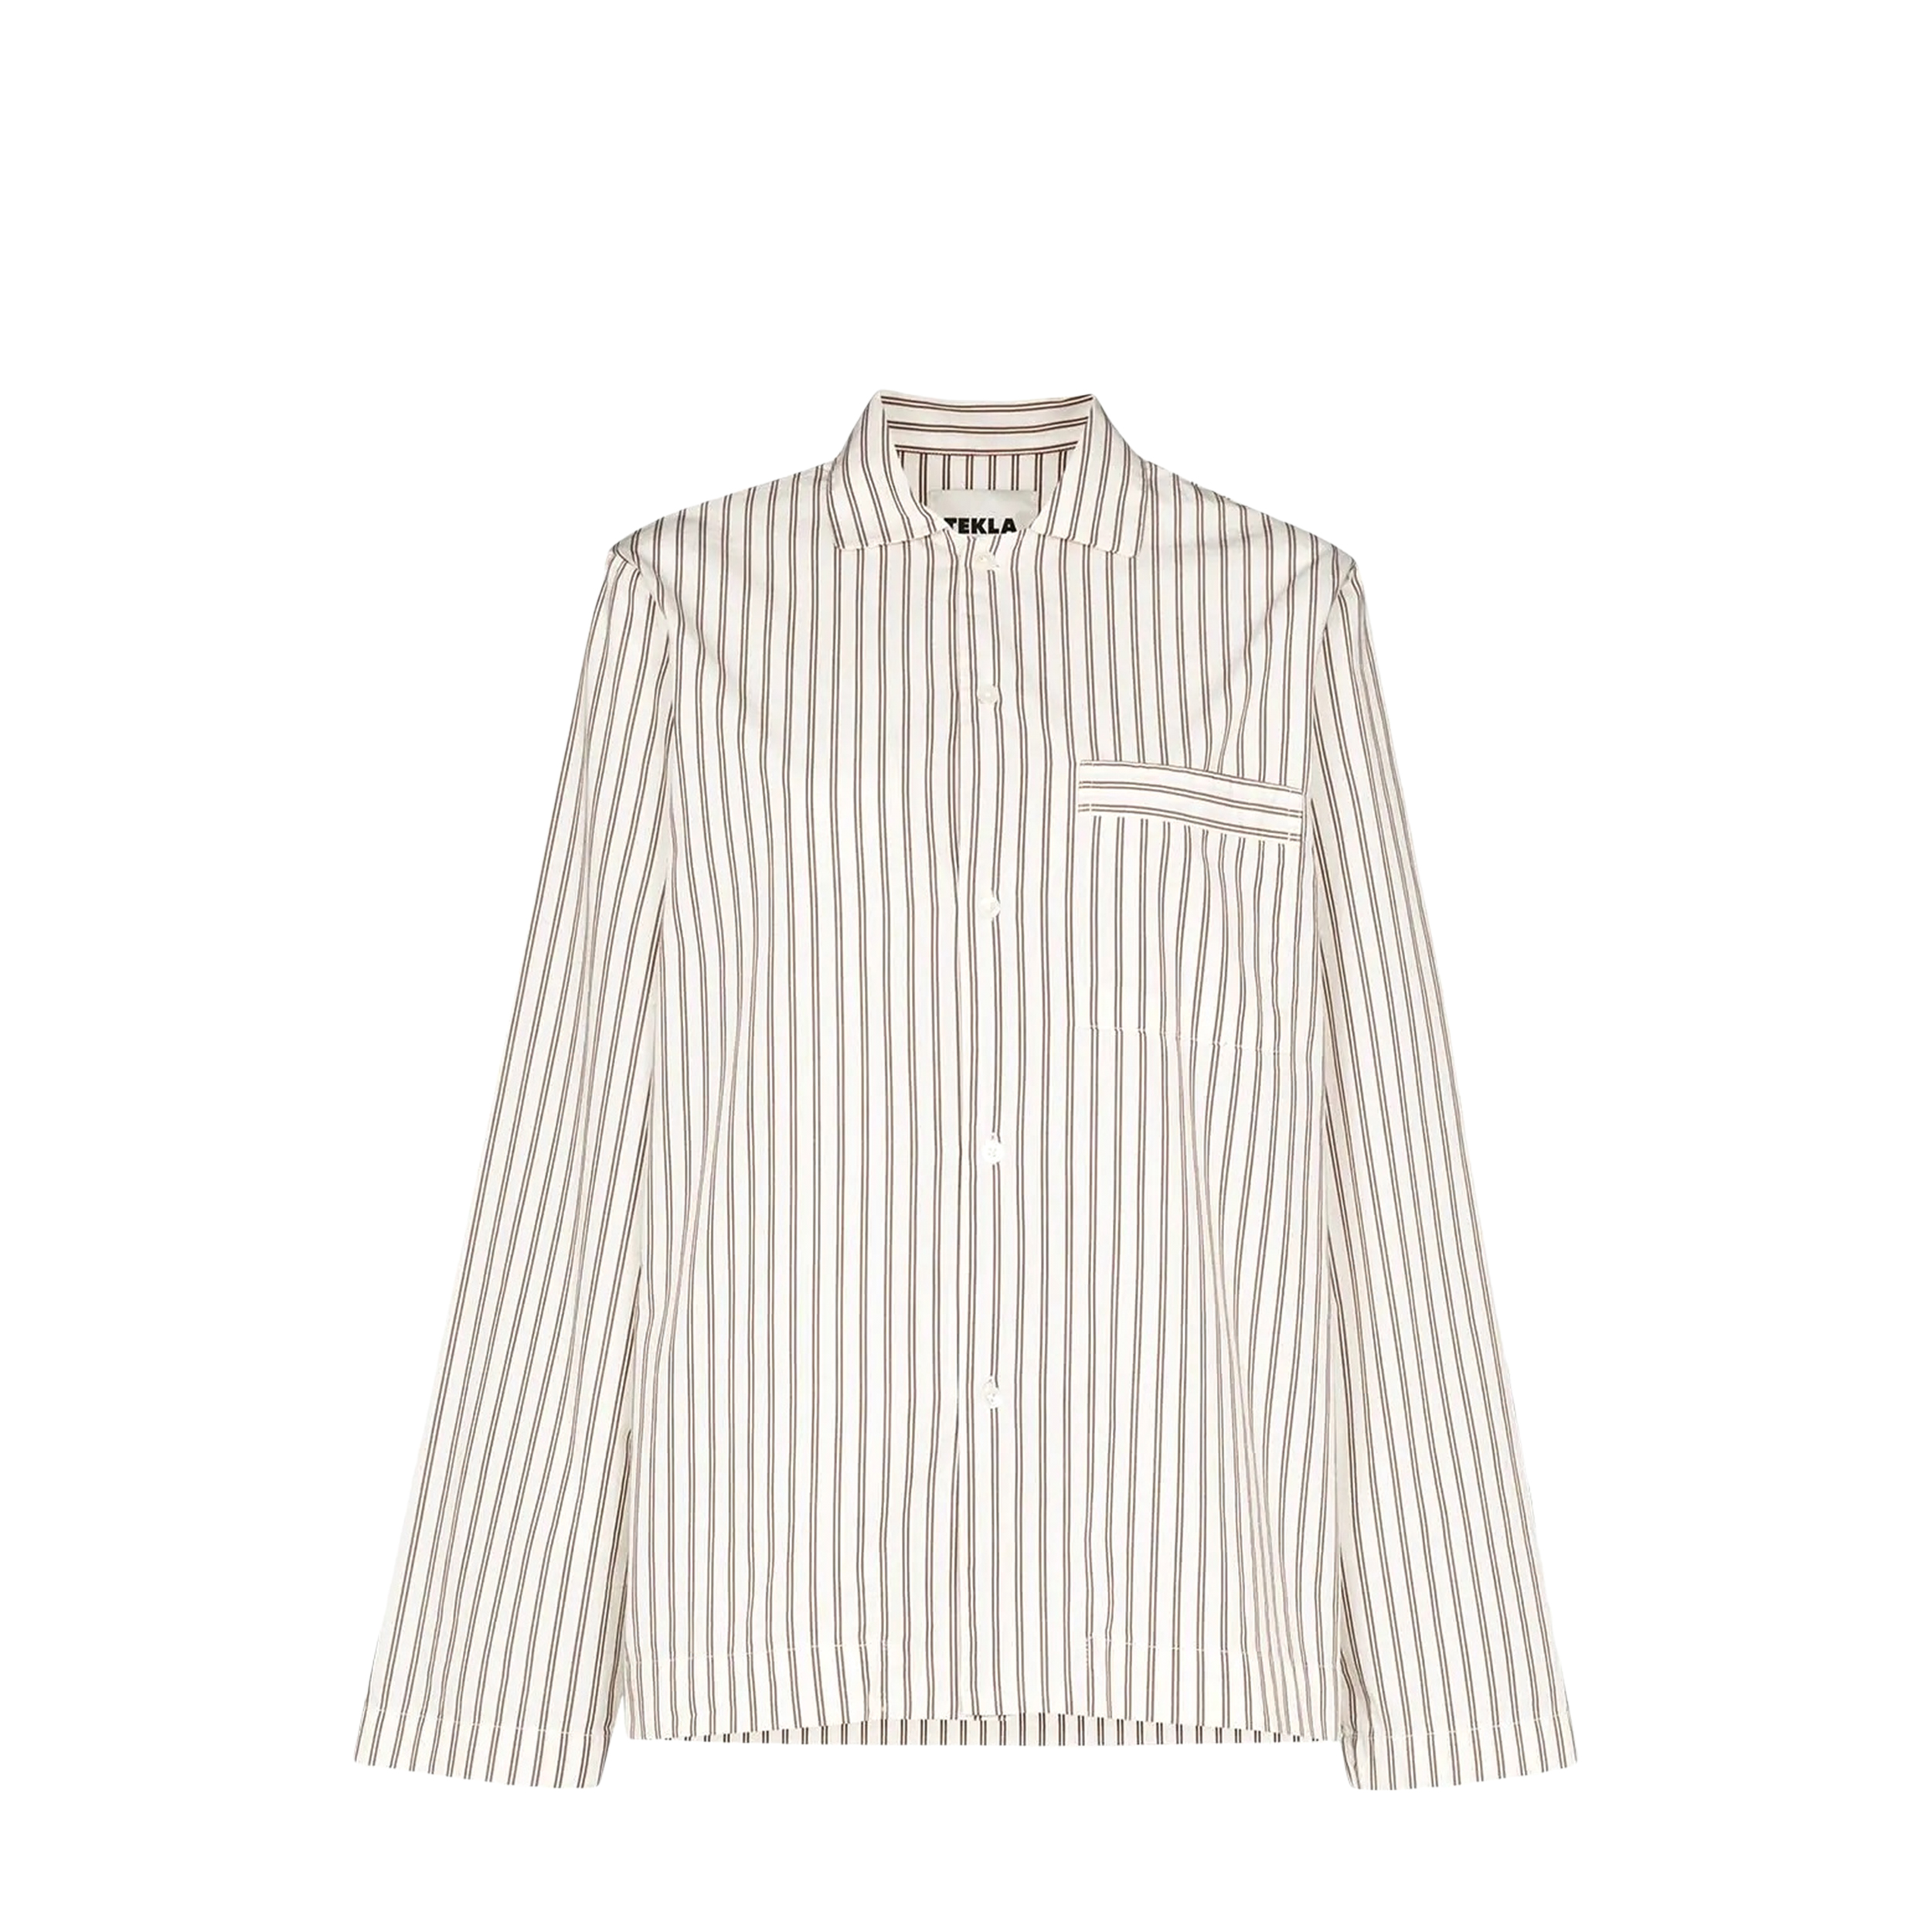 Tekla Tekla Poplin Pyjamas Shirt White & Brown Striped (L) SWT-HS Poplin Pyjamas Shirt White & Brown Striped (L) - фото 1